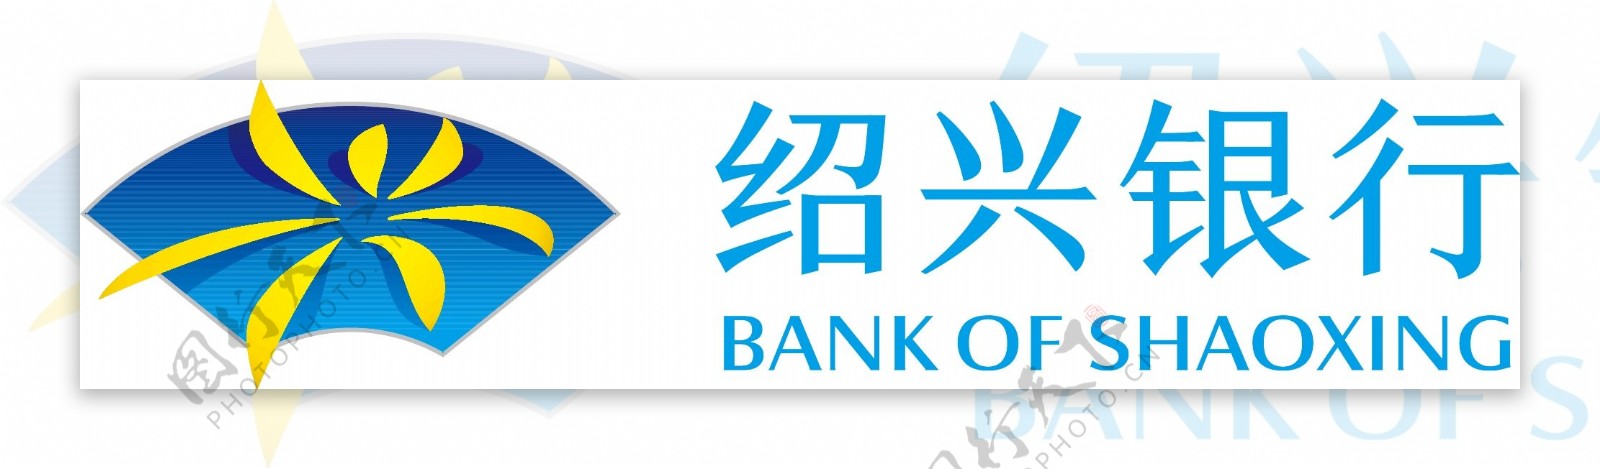 绍兴银行标志LOGO